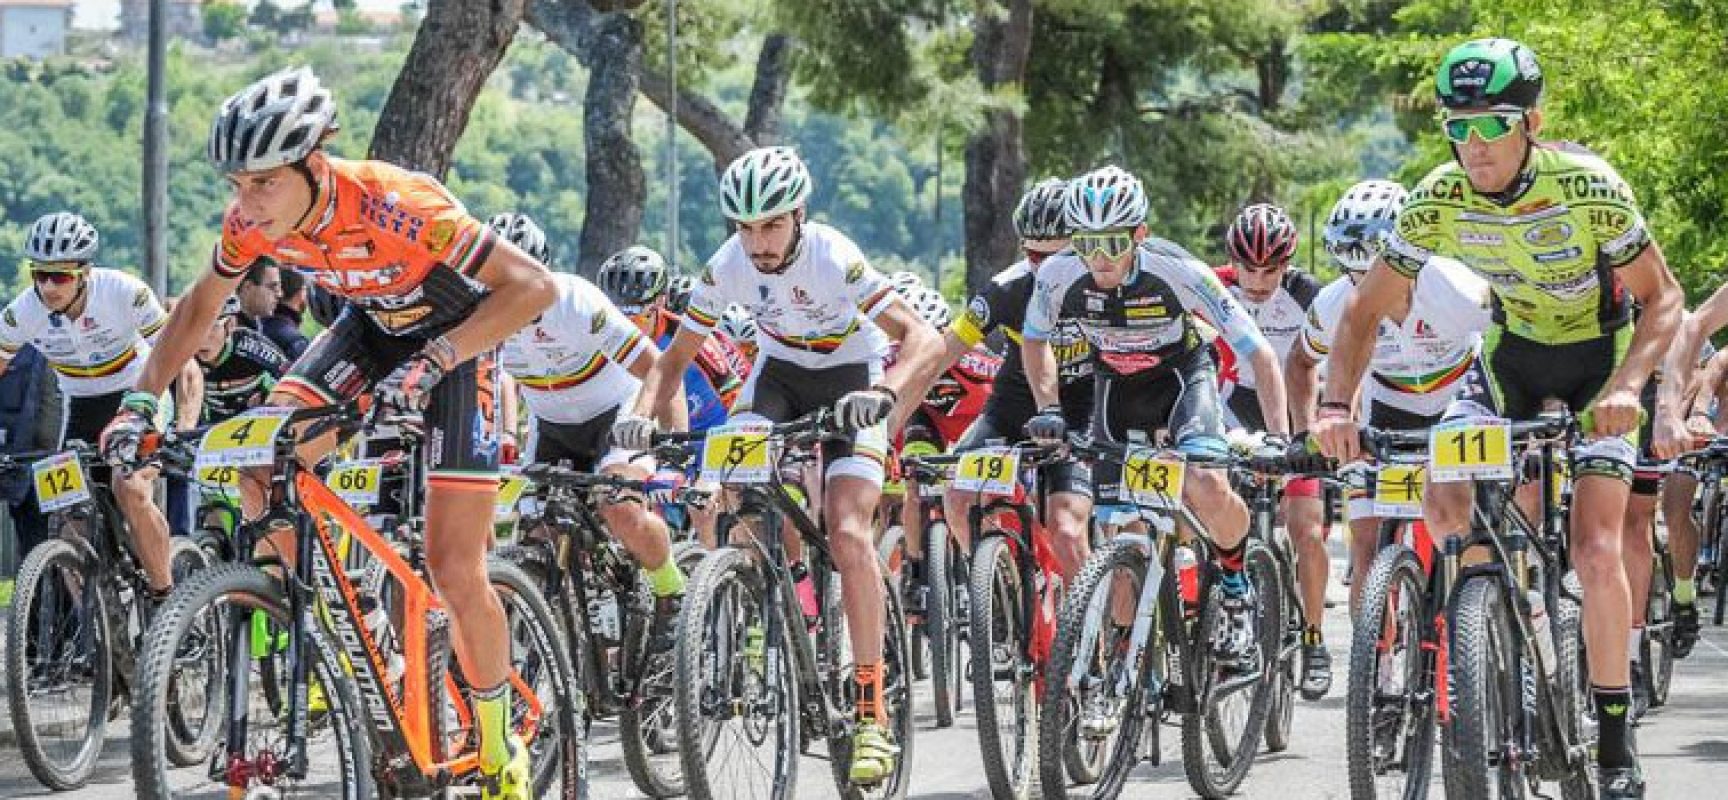 Polisportiva Cavallaro, buoni riscontri nelle gare Mountain Bike in Abruzzo